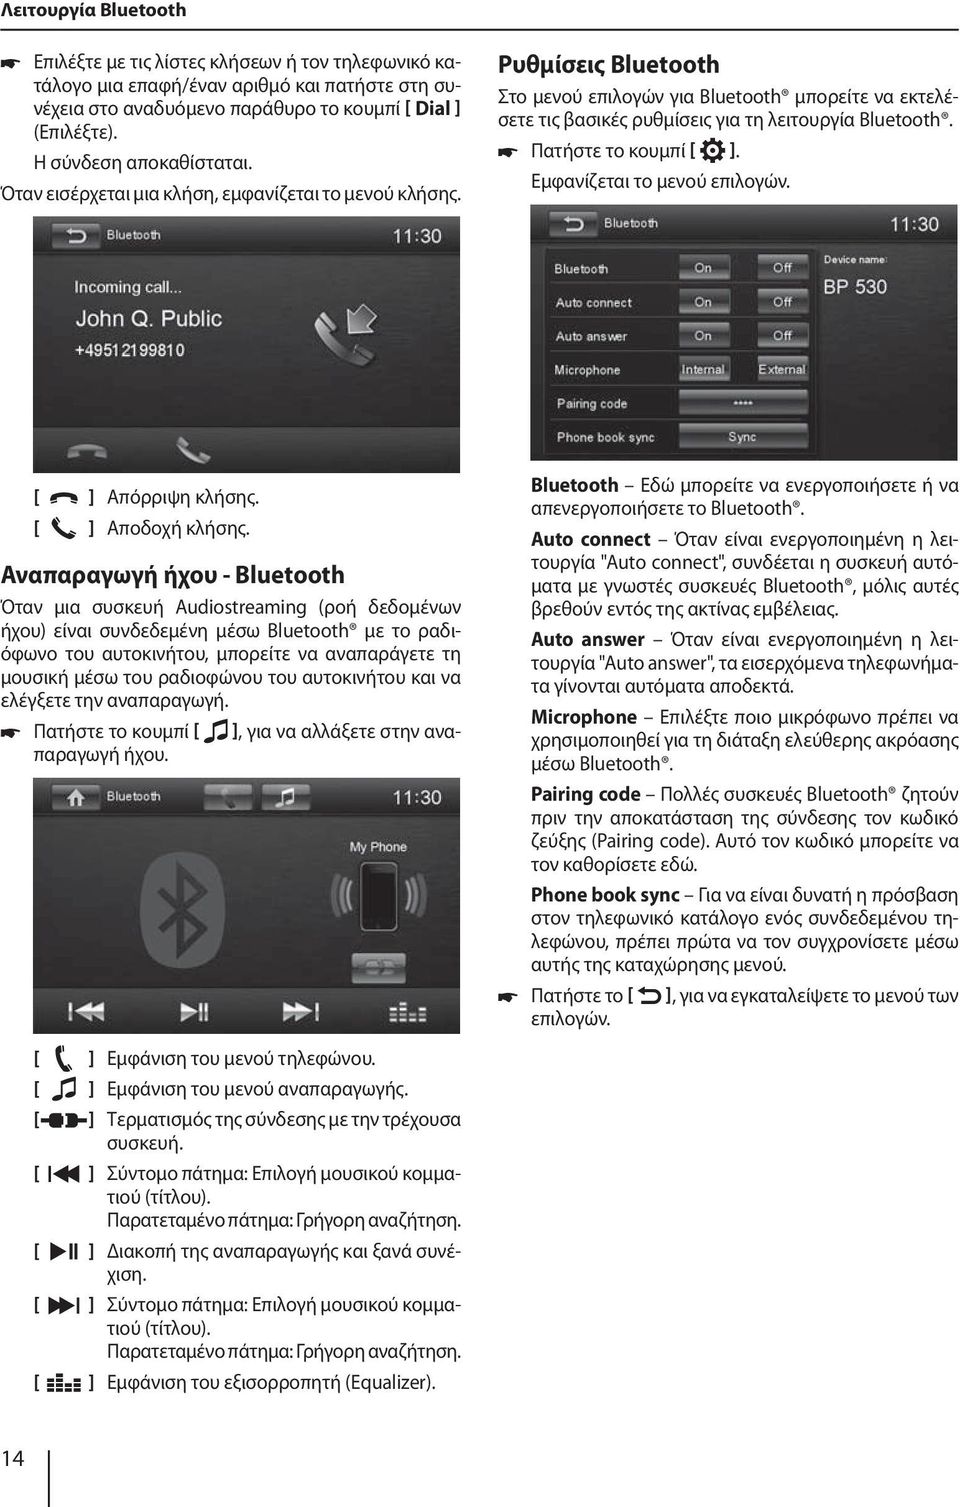 Ρυθμίσεις Bluetooth Στο μενού επιλογών για Bluetooth μπορείτε να εκτελέσετε τις βασικές ρυθμίσεις για τη λειτουργία Bluetooth. Πατήστε το κουμπί ]. Εμφανίζεται το μενού επιλογών. ] Απόρριψη κλήσης.